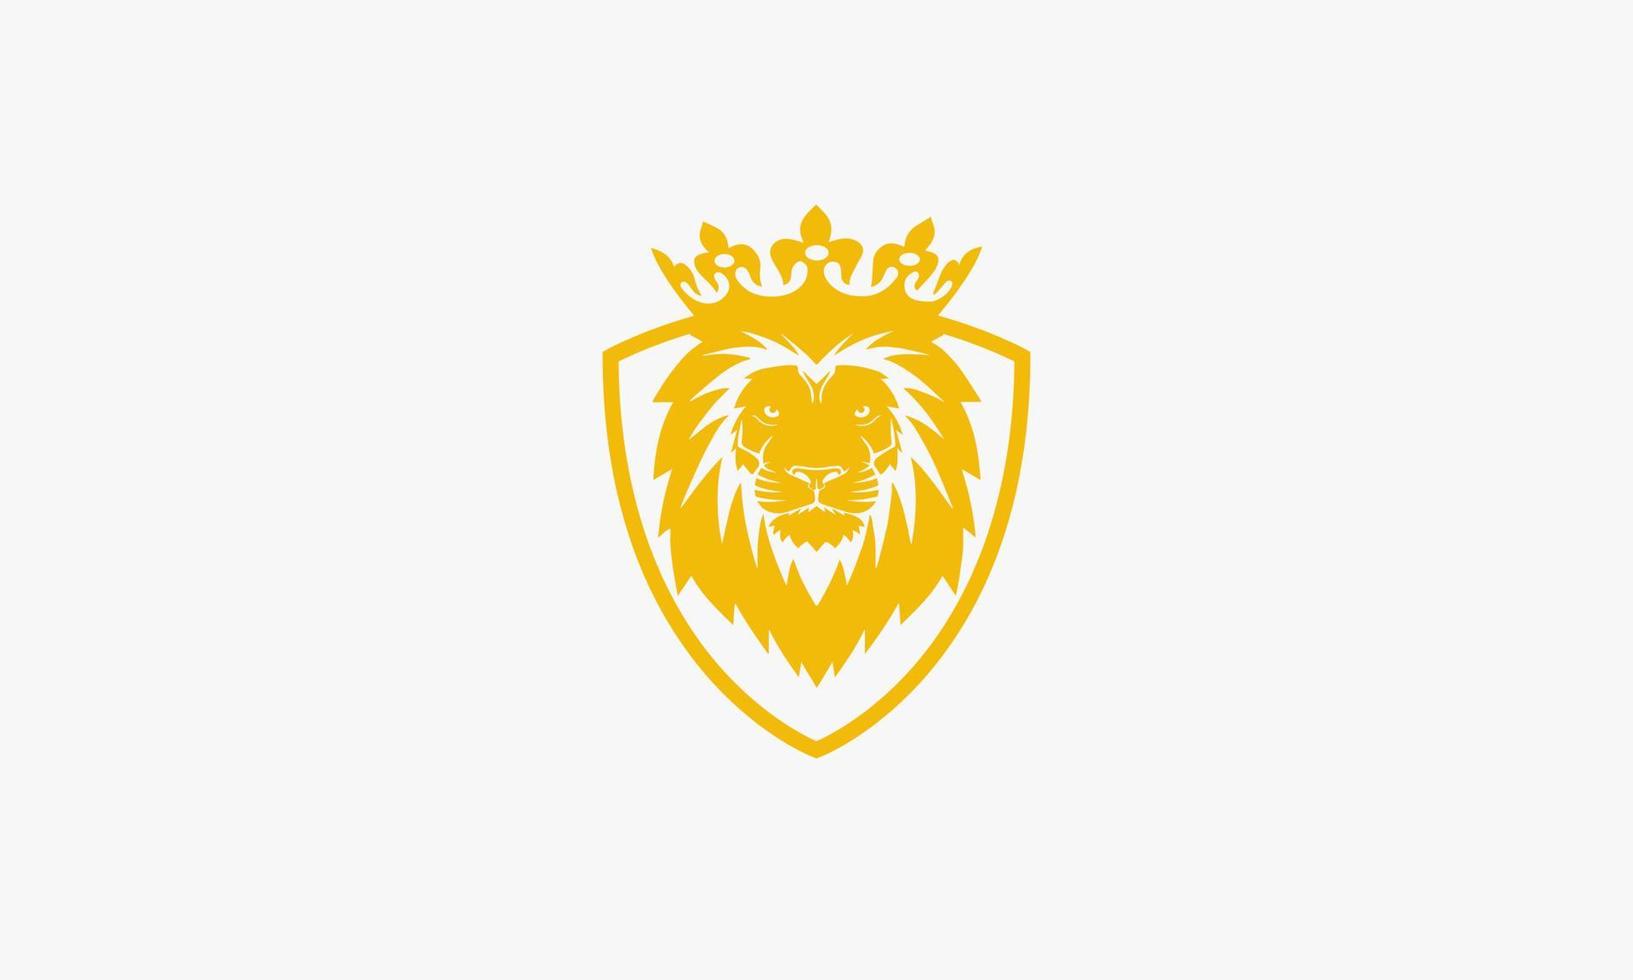 escudo logo de la corona del rey león. vector de diseño gráfico de color dorado.